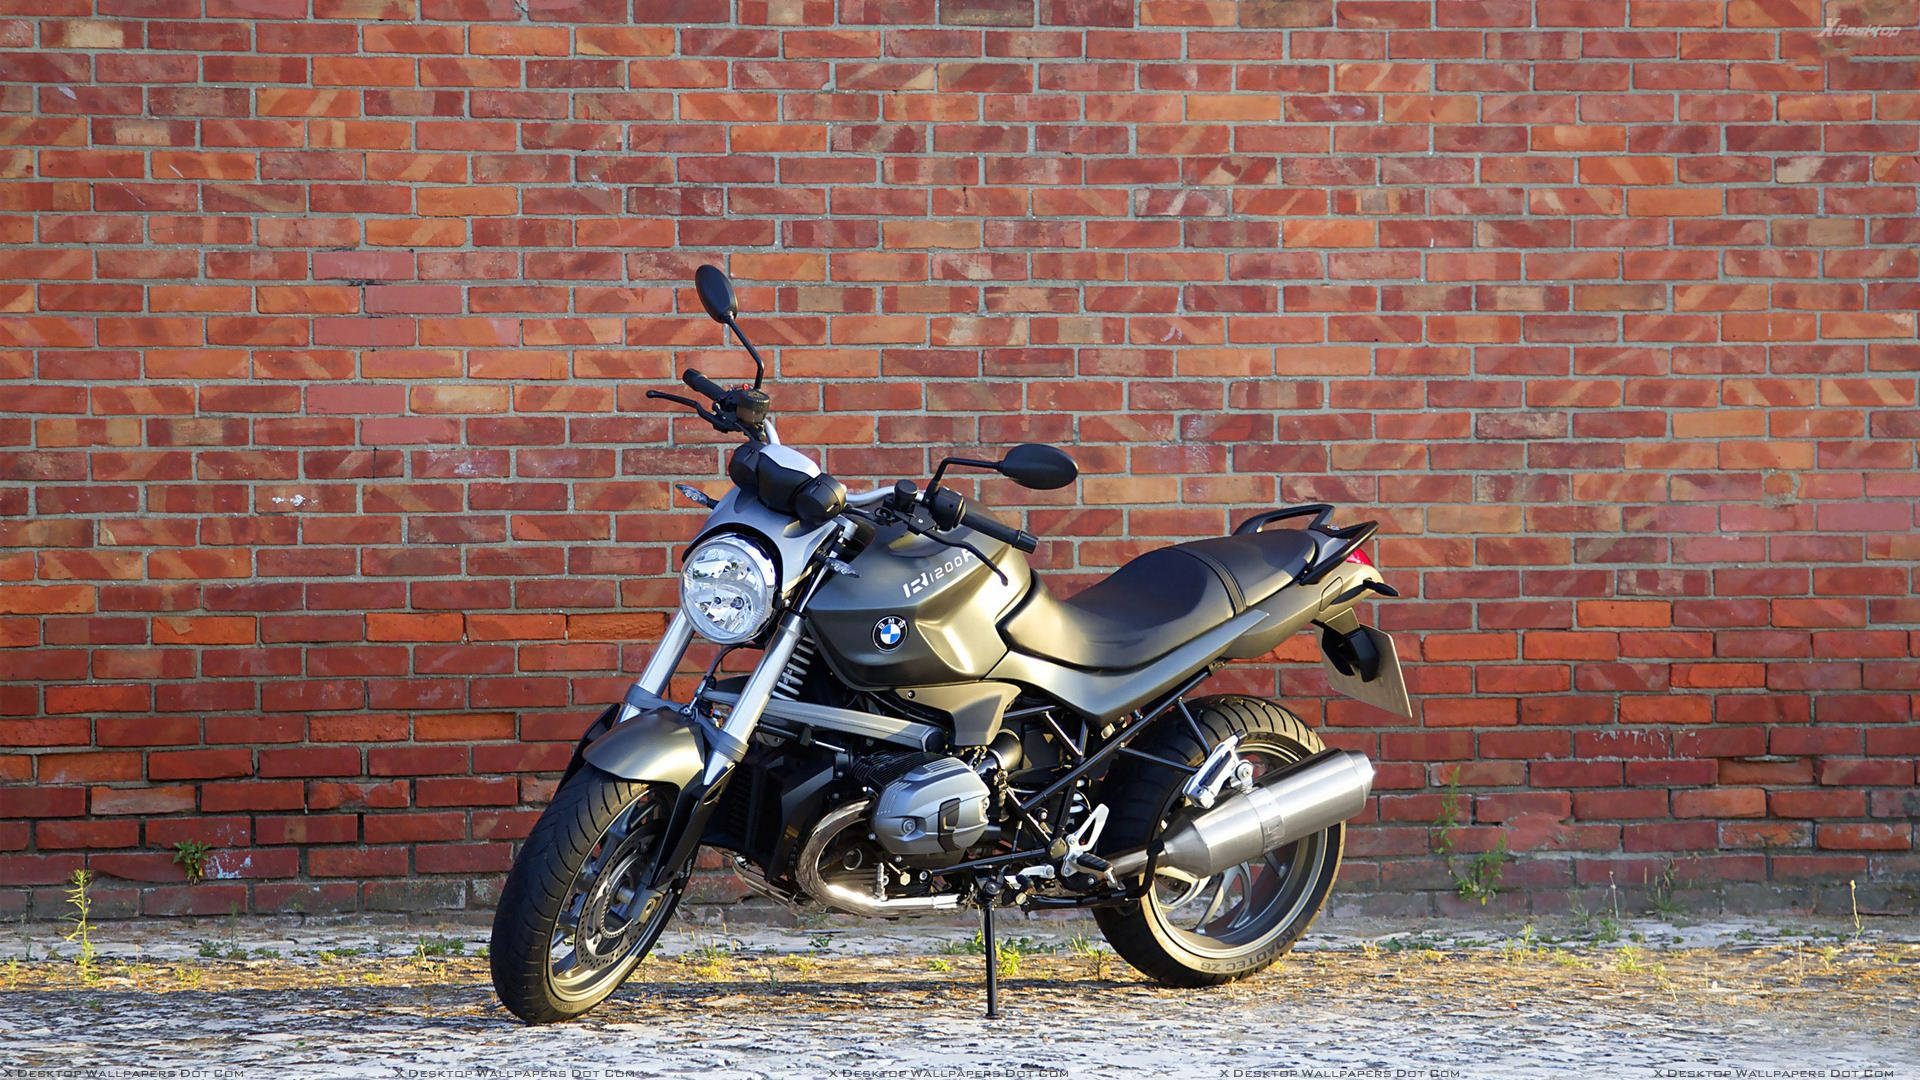 Black Bmw R1200r Motor Bike Background